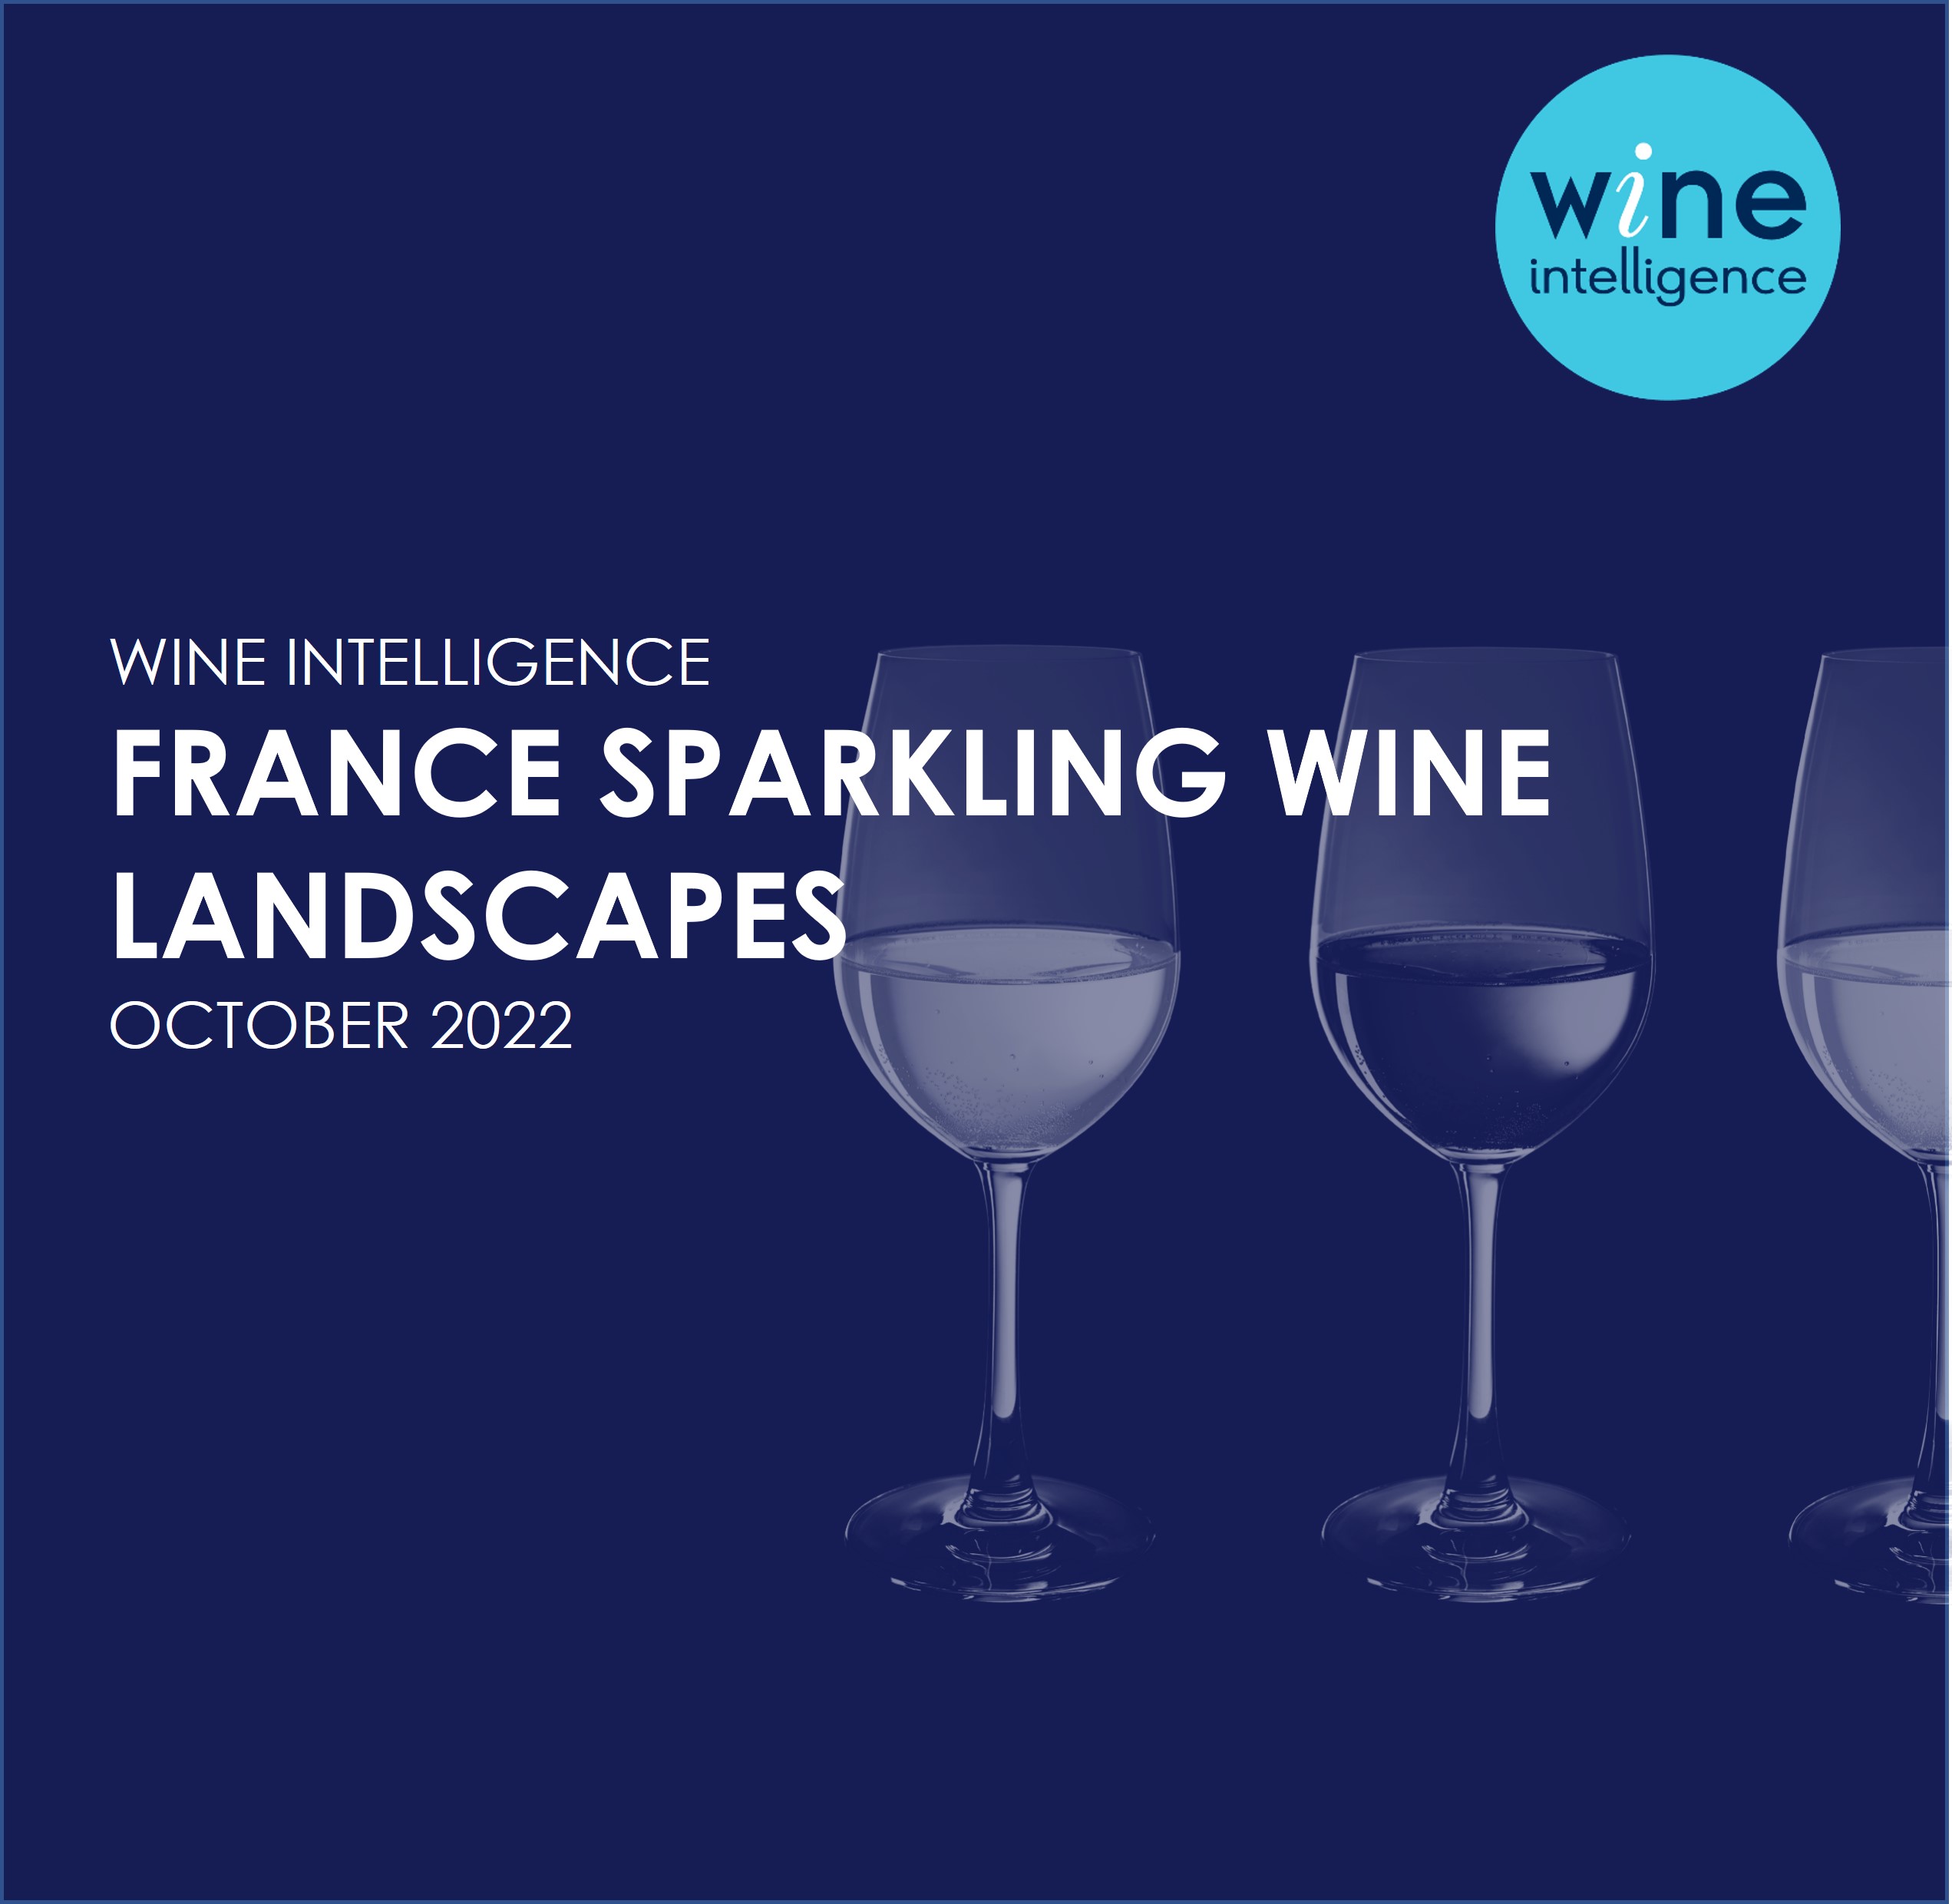 France sparkling wine landscapes 2022 - Les Vins Effervescents Sur Le Marche Francais 2022 (Sparkling Wine in the French Market 2022)